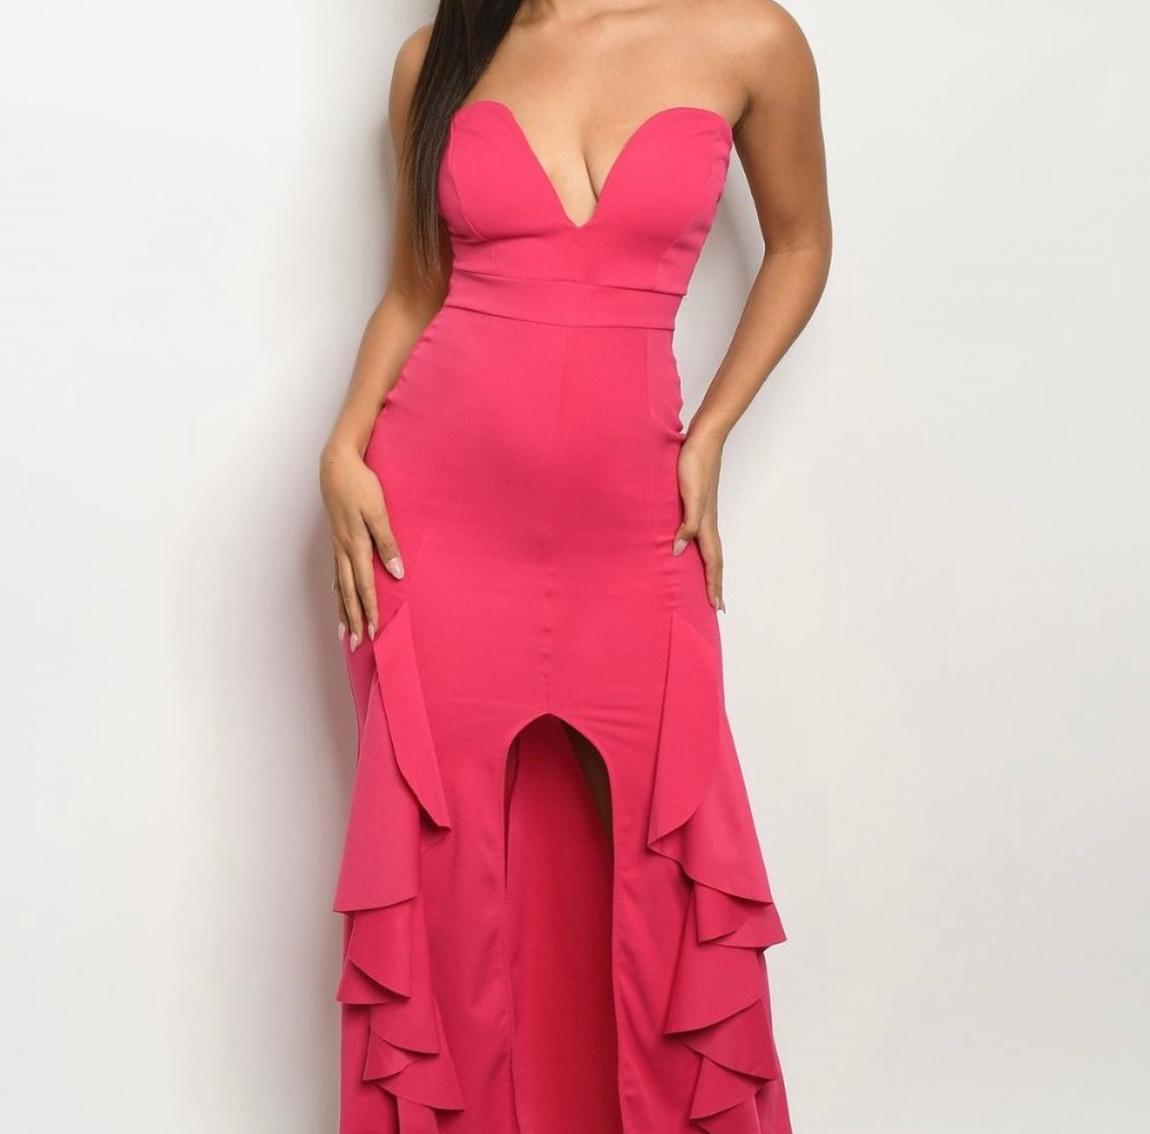 Size 8 Off The Shoulder Hot Pink Side Slit Dress on Queenly